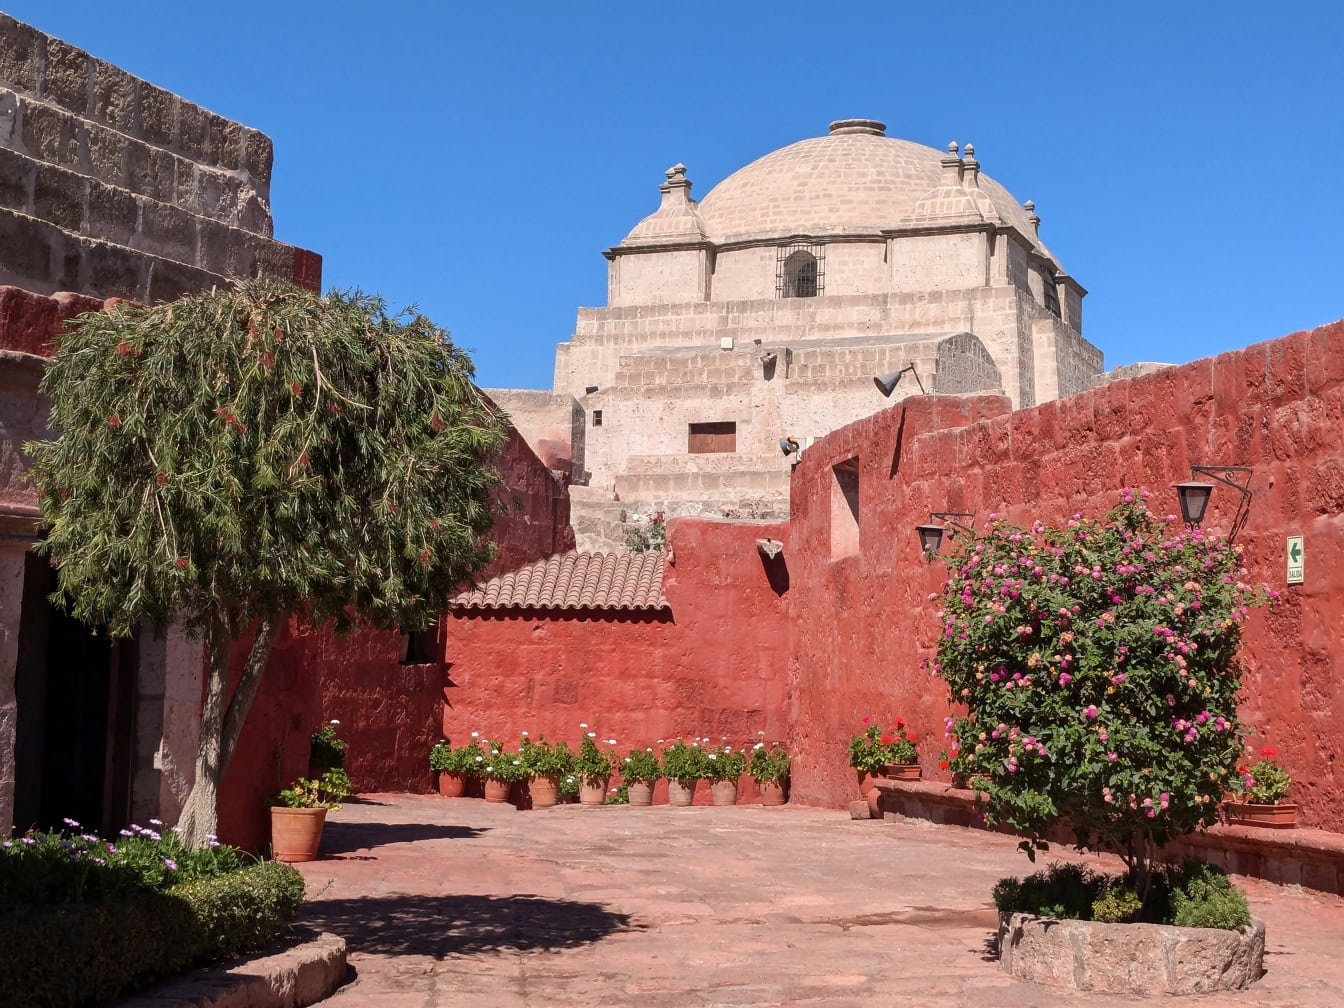 유네스코 세계 문화 유산 인 페루의 산타 카탈리나 데 시에나 (Santa Catalina de Siena)의 도미니카 제 2 회 수도원 안뜰